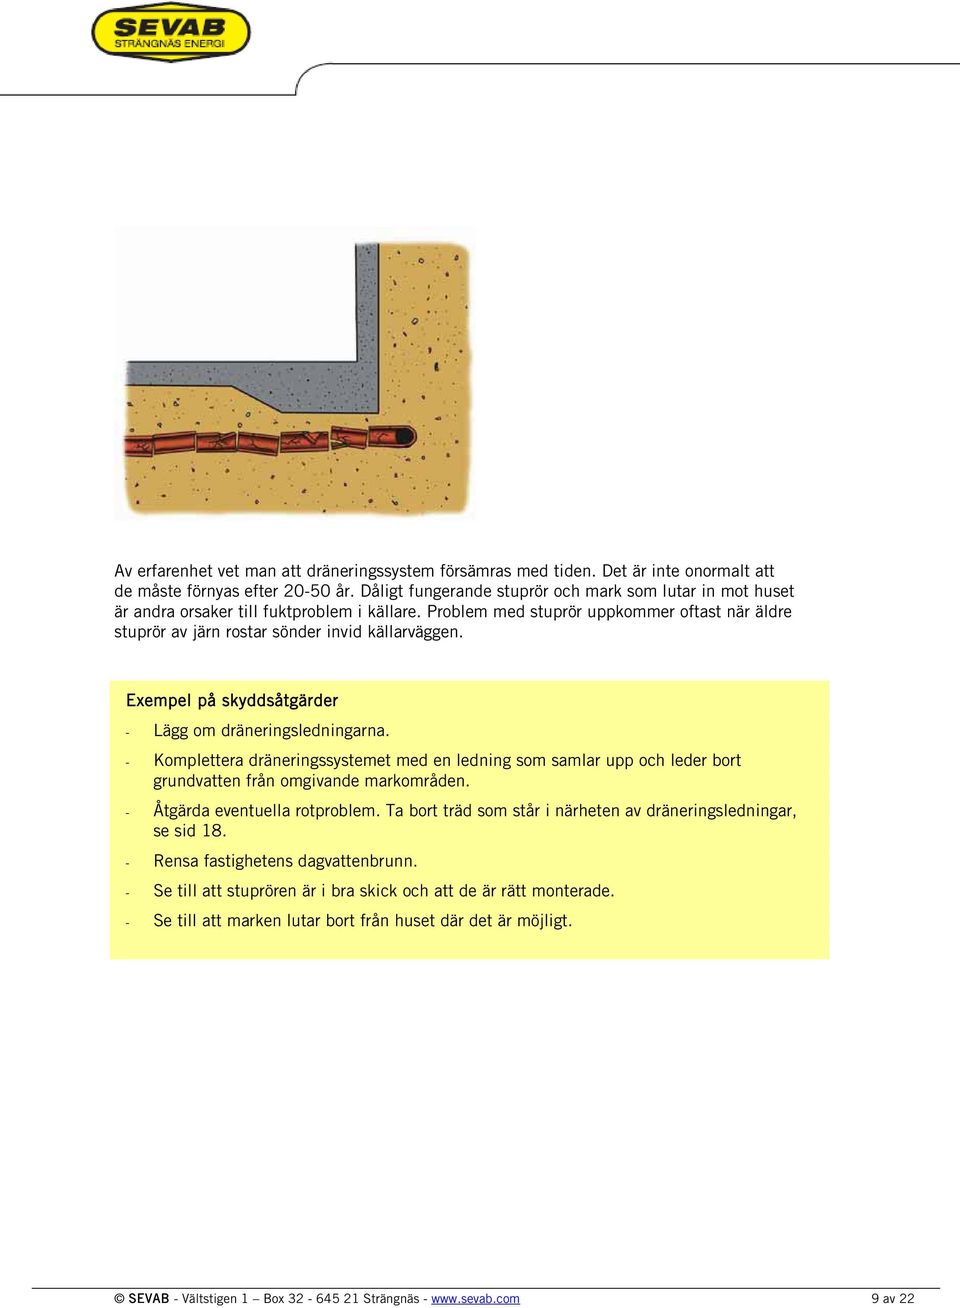 Exempel på skyddsåtgärder Lägg om dräneringsledningarna. Komplettera dräneringssystemet med en ledning som samlar upp och leder bort grundvatten från omgivande markområden.